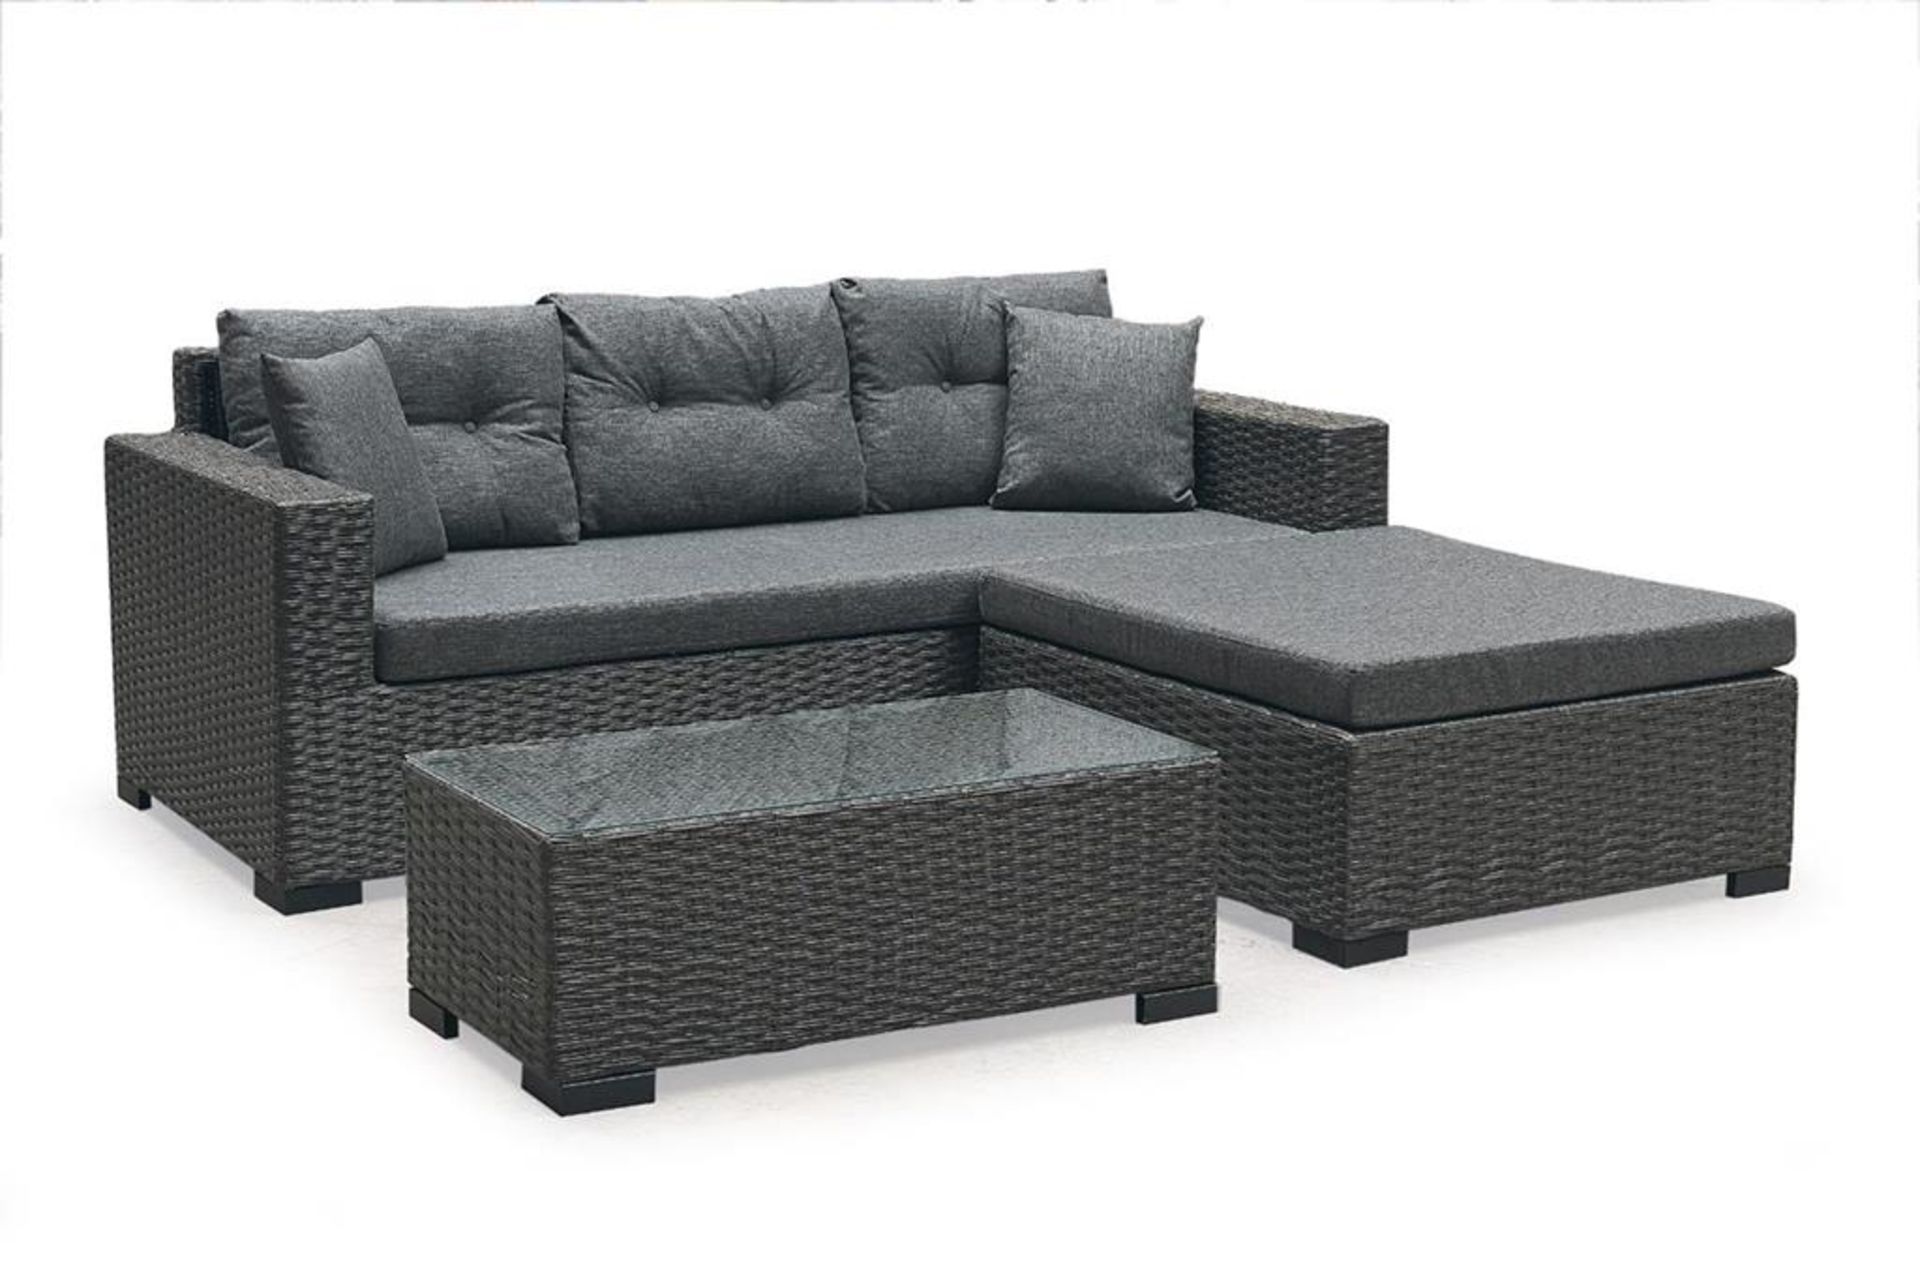 + VAT Brand New SRP £1349.99 The Chelsea Garden Co "Monaco" Range Grey Modular Corner Sofa Set